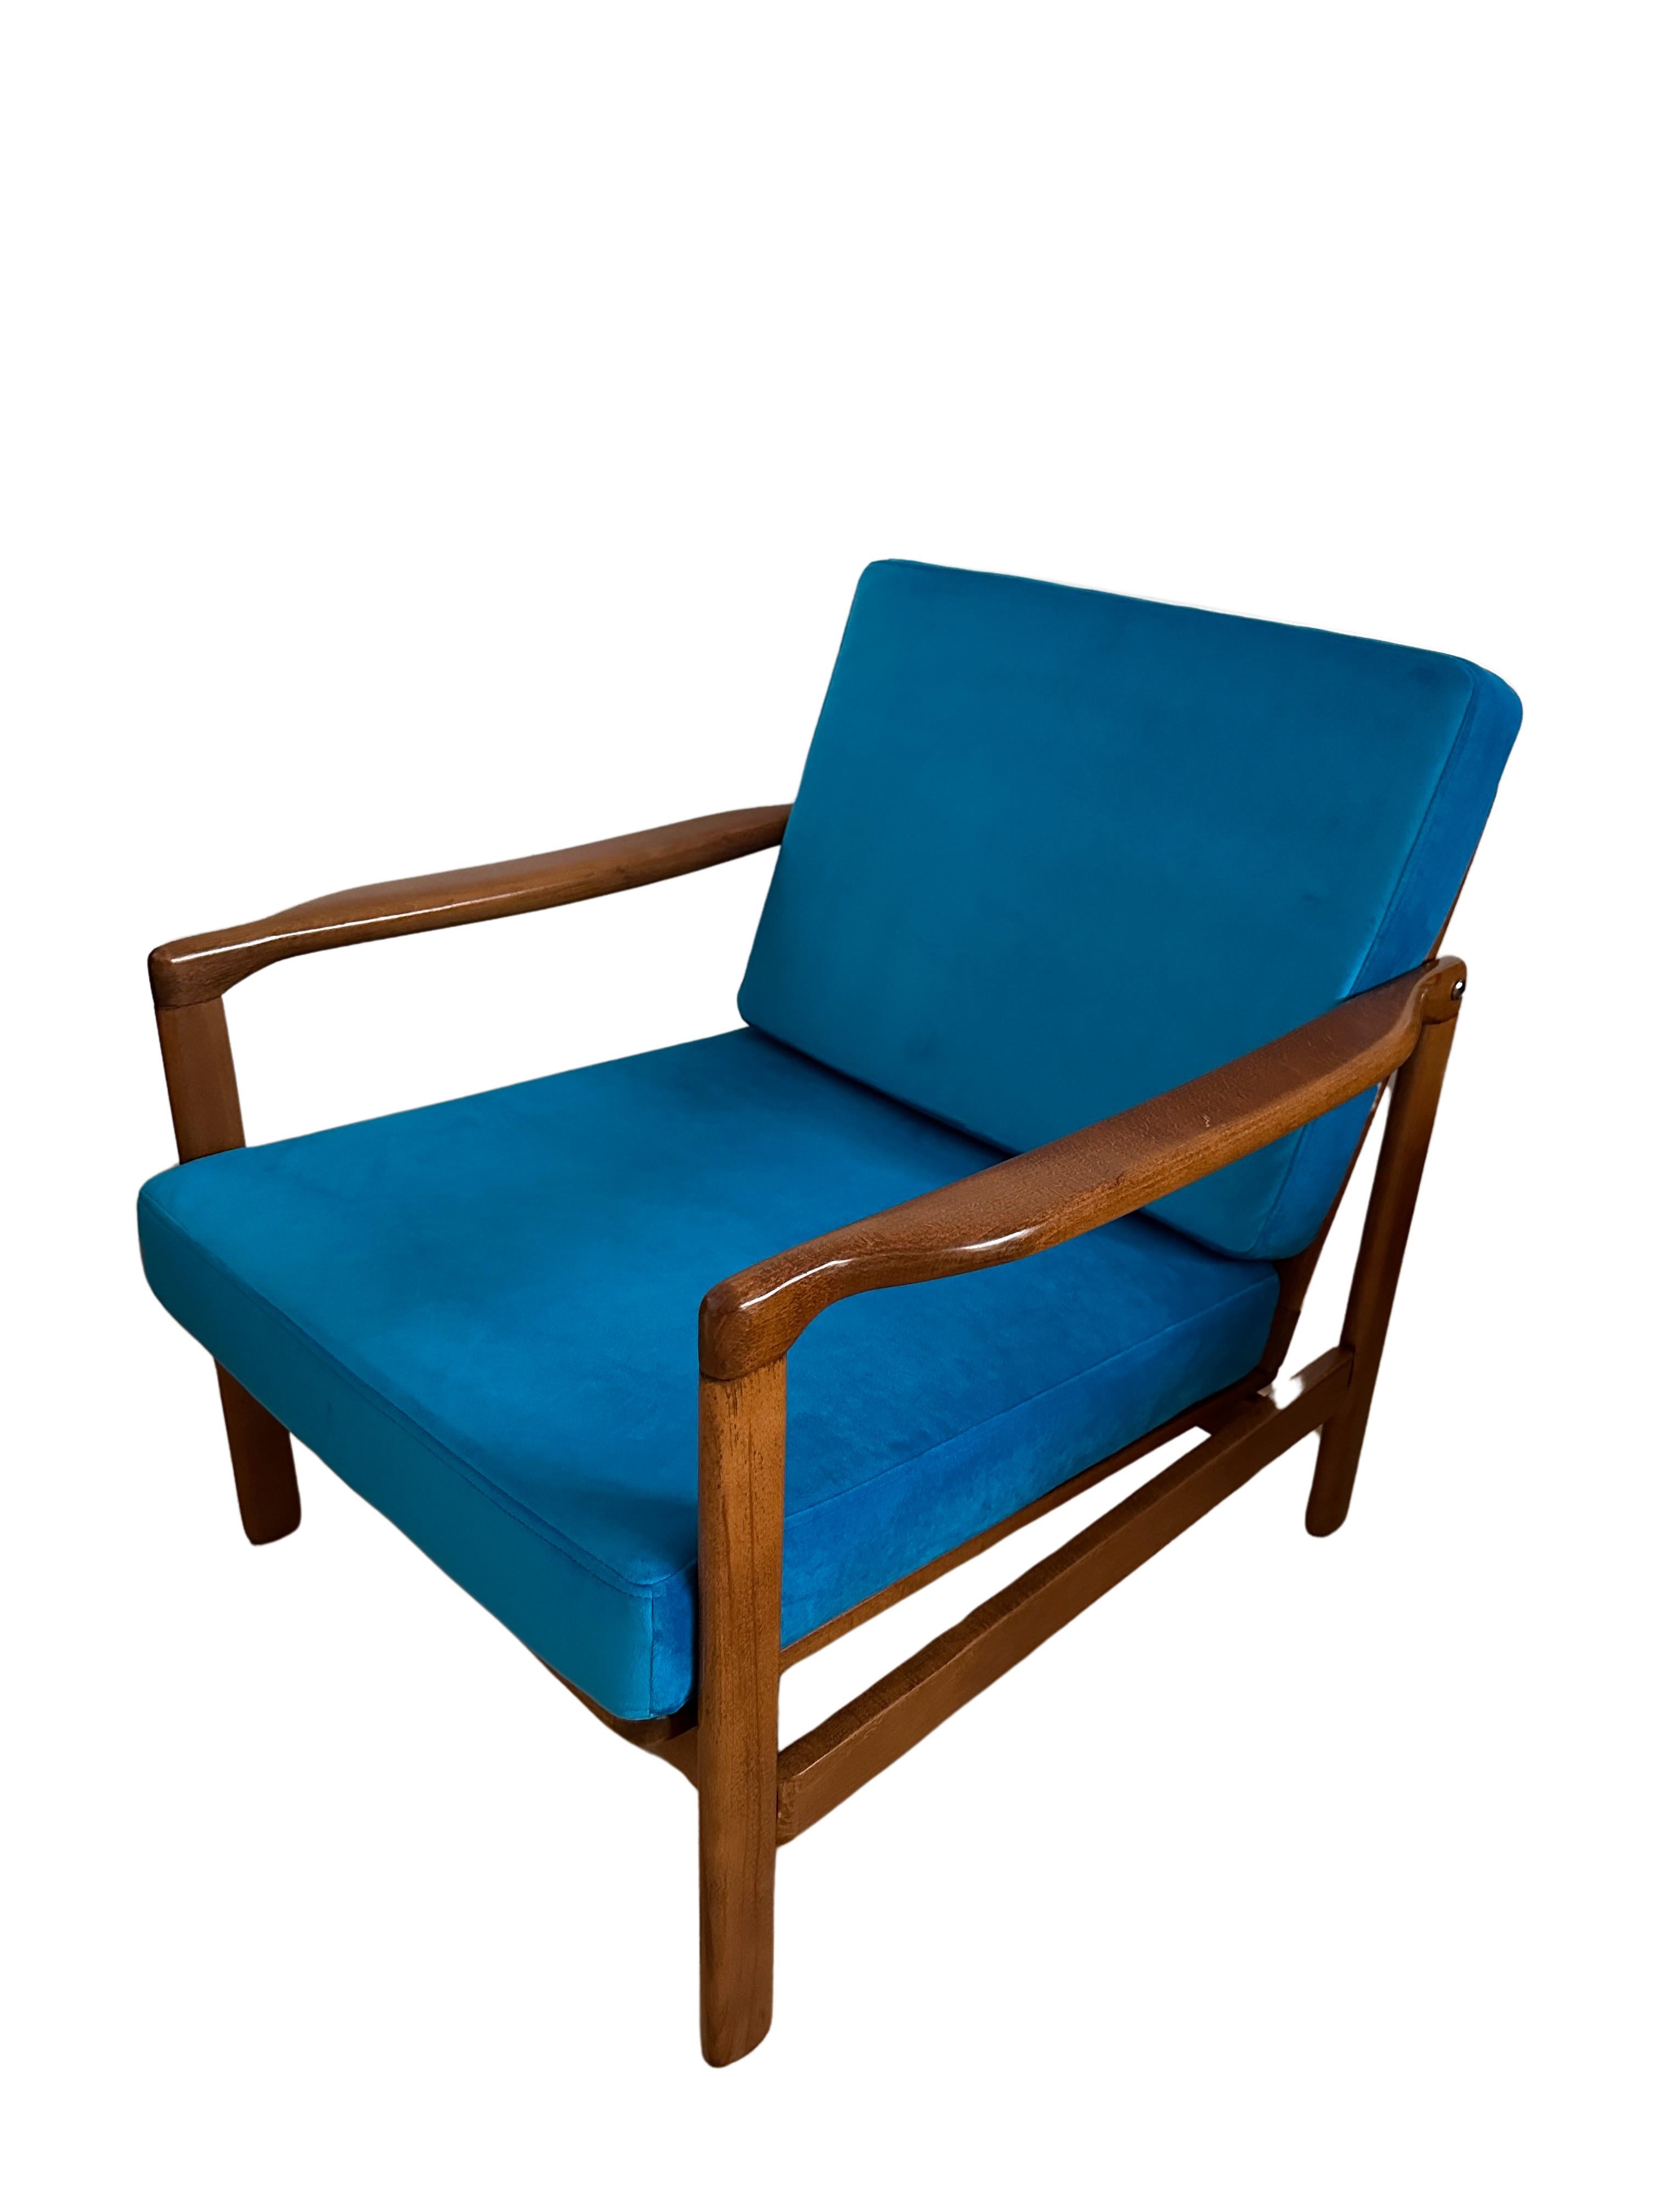 Sehr bequeme Sessel Modell B-7752, entworfen von Zenon Baczyk, wurden in den 1960er Jahren von Swarzedzkie Fabryki Mebli in Polen hergestellt. 

Die Struktur besteht aus Buchenholz in tiefem Honigbraun, das mit einem seidenmatten Lack überzogen ist.